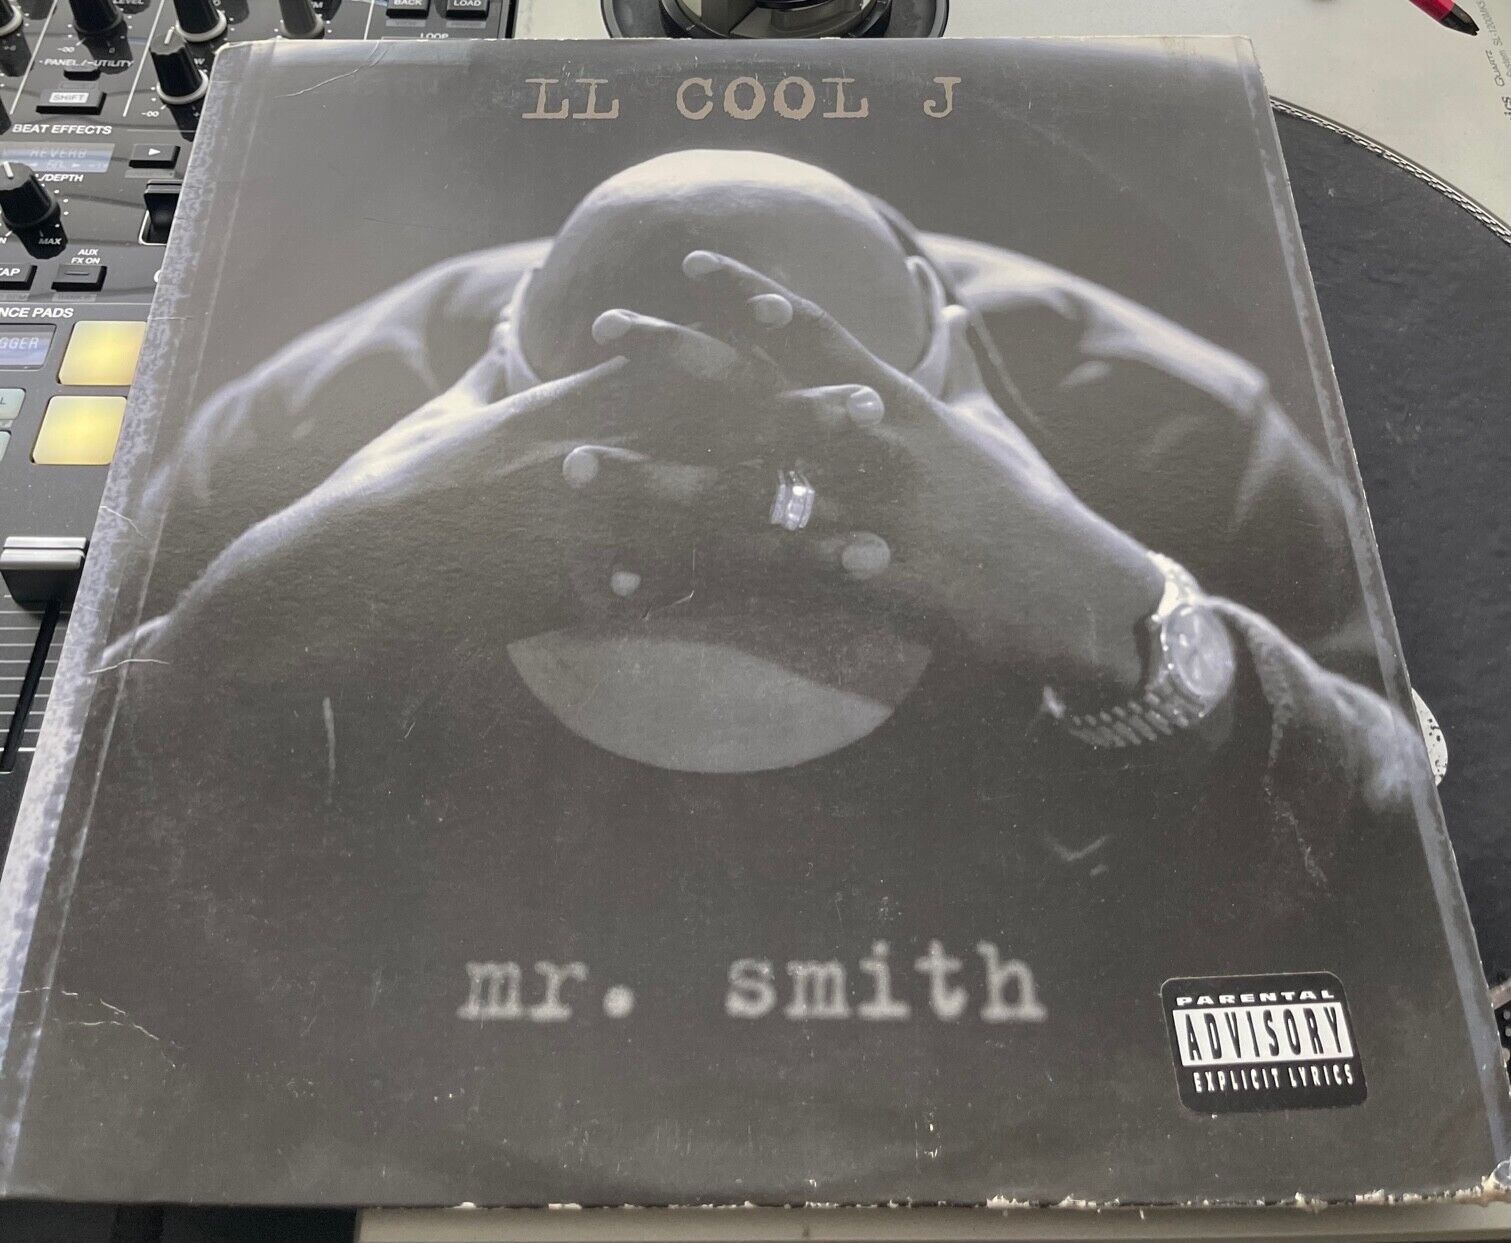 LL Cool J - Mr. Smith Original 1995 Press PROMO LP  in Picture Cover VG+